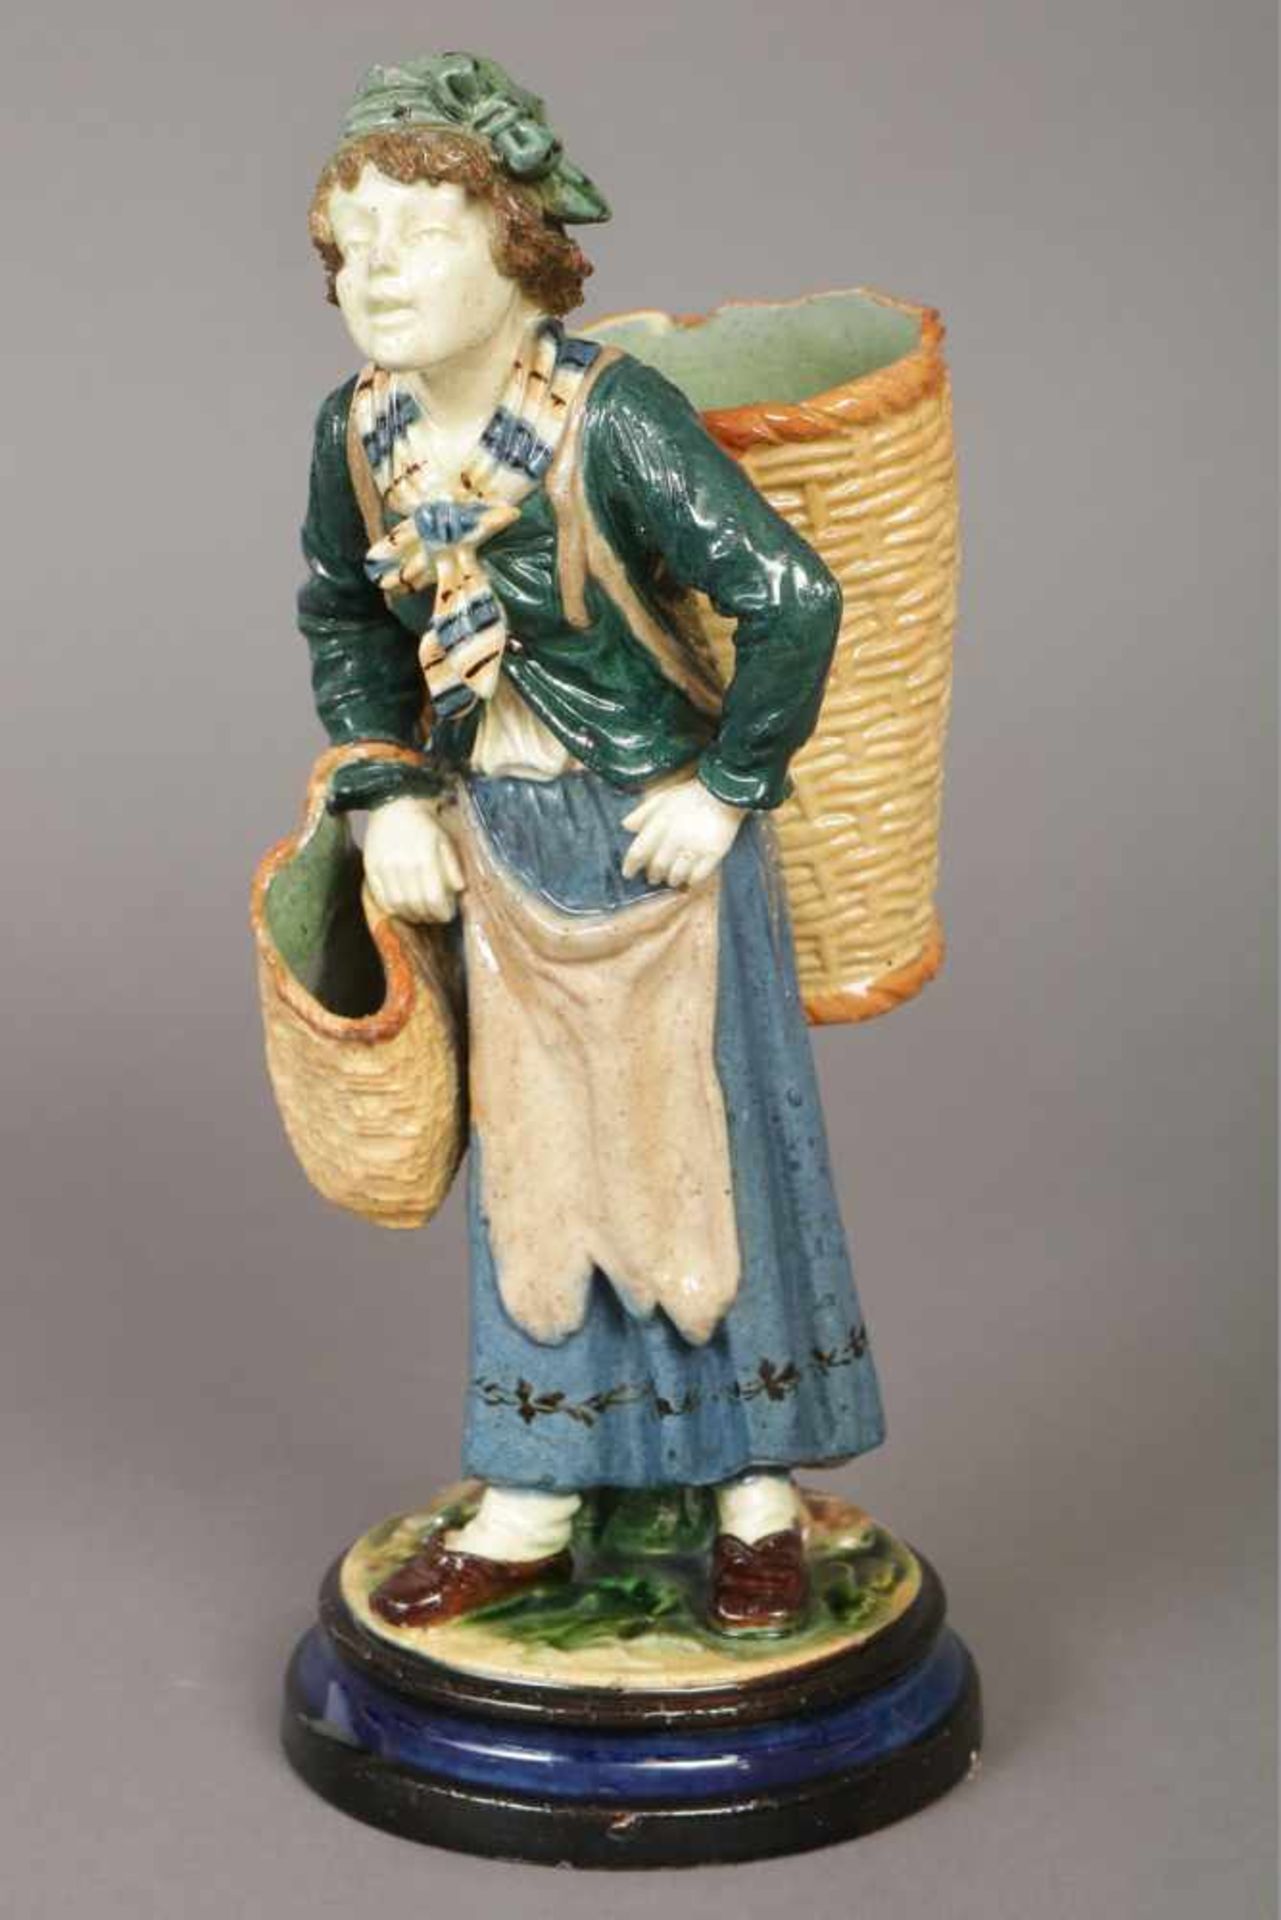 Keramikfigur ¨Bäuerin mit Weidenkörben¨unbekannte Manufaktur des 19. Jhdts., farbig staffiert, am